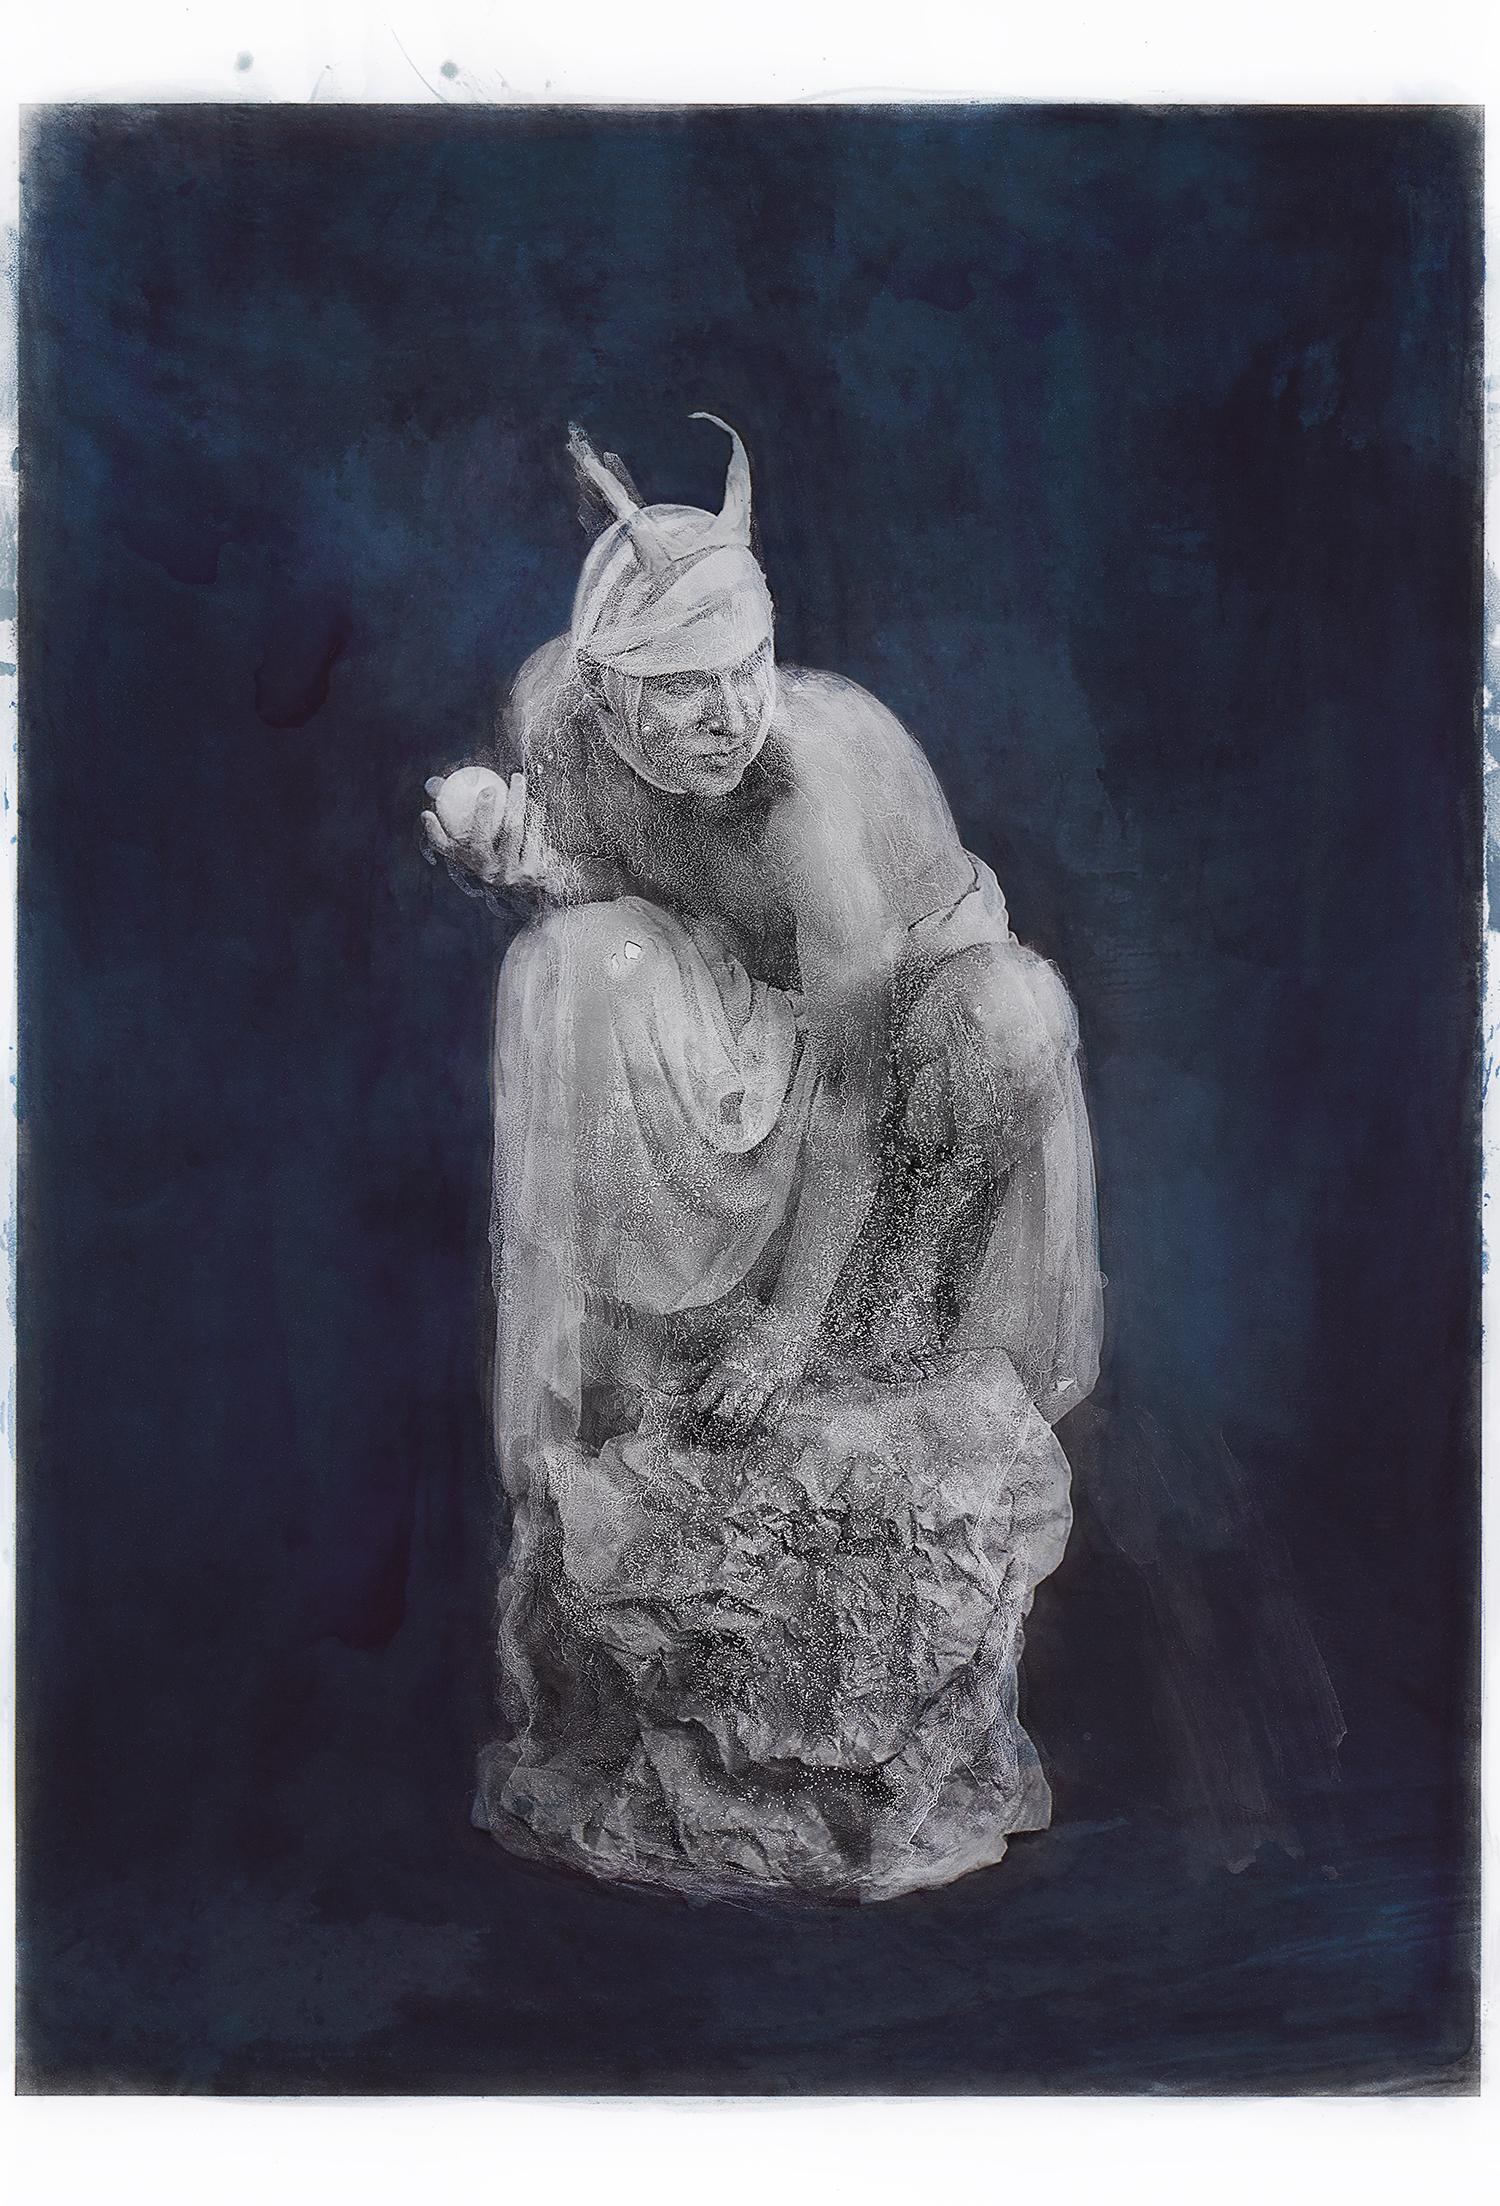 Impression colorée à la main en bleu - Portrait d'un diable imbriqué dans du marbre